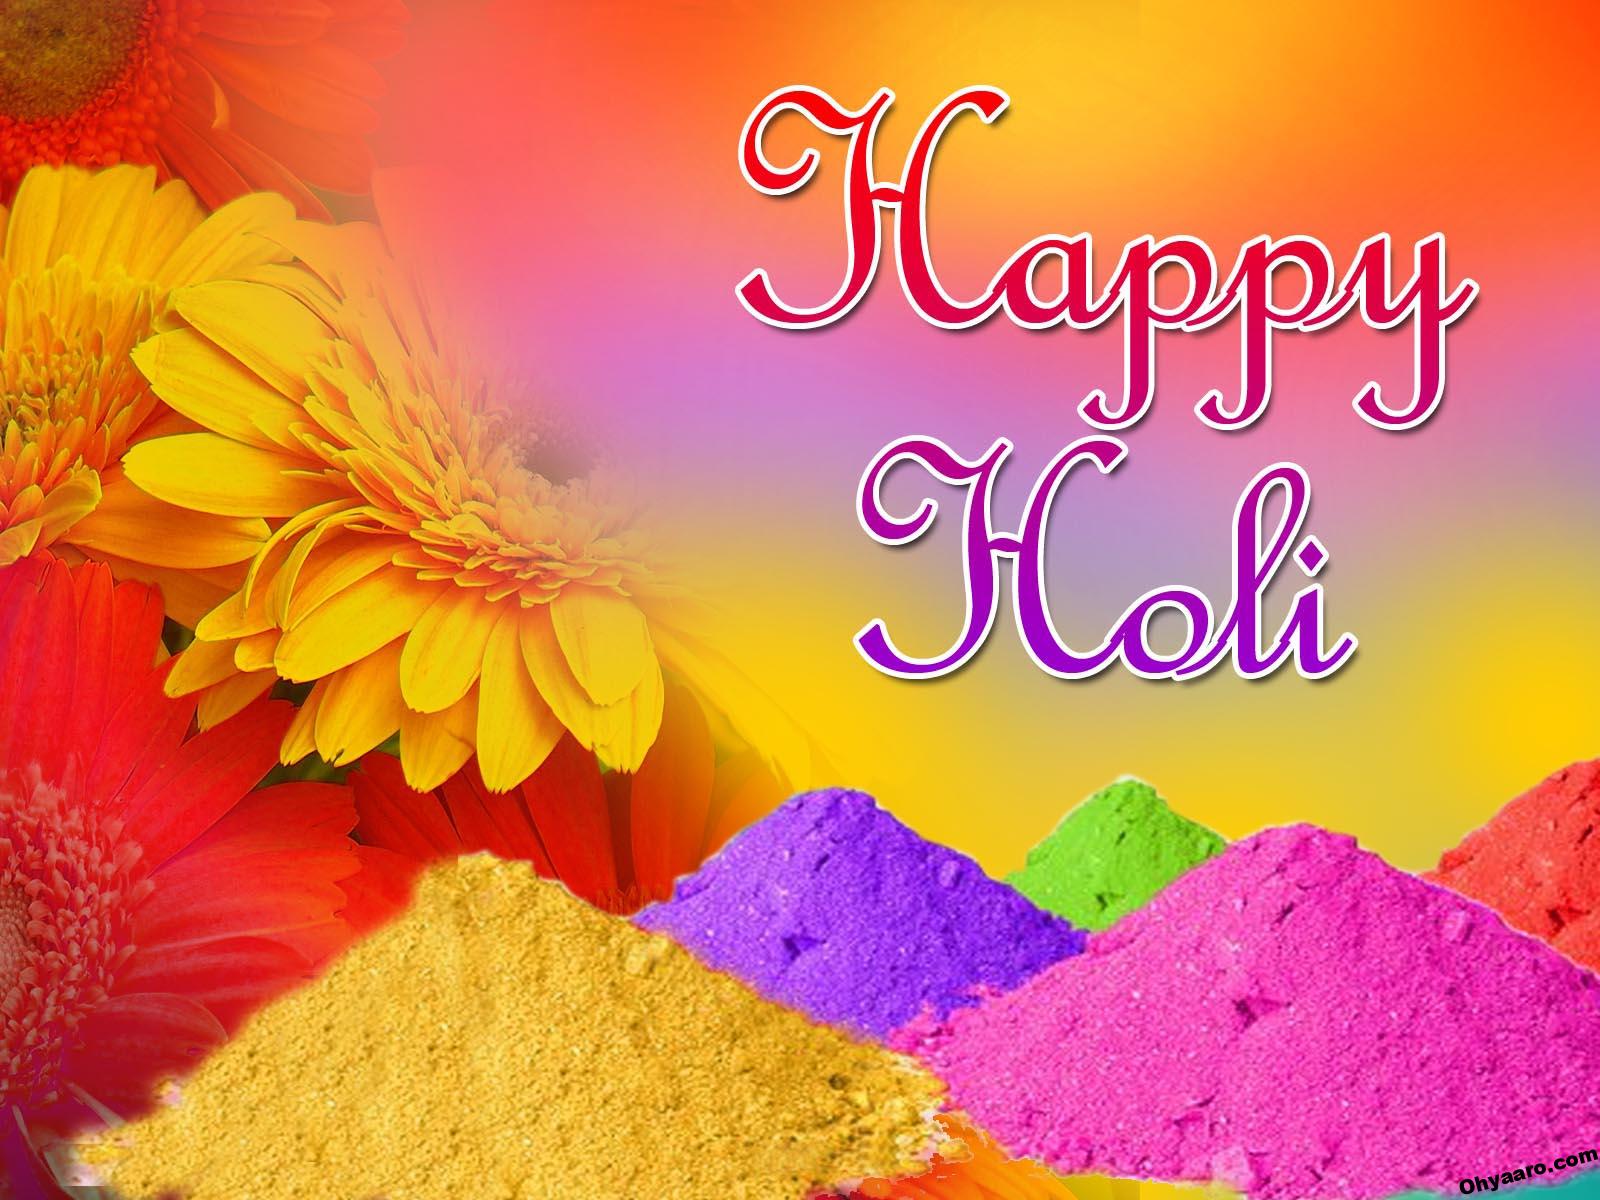 happy holi wishes images